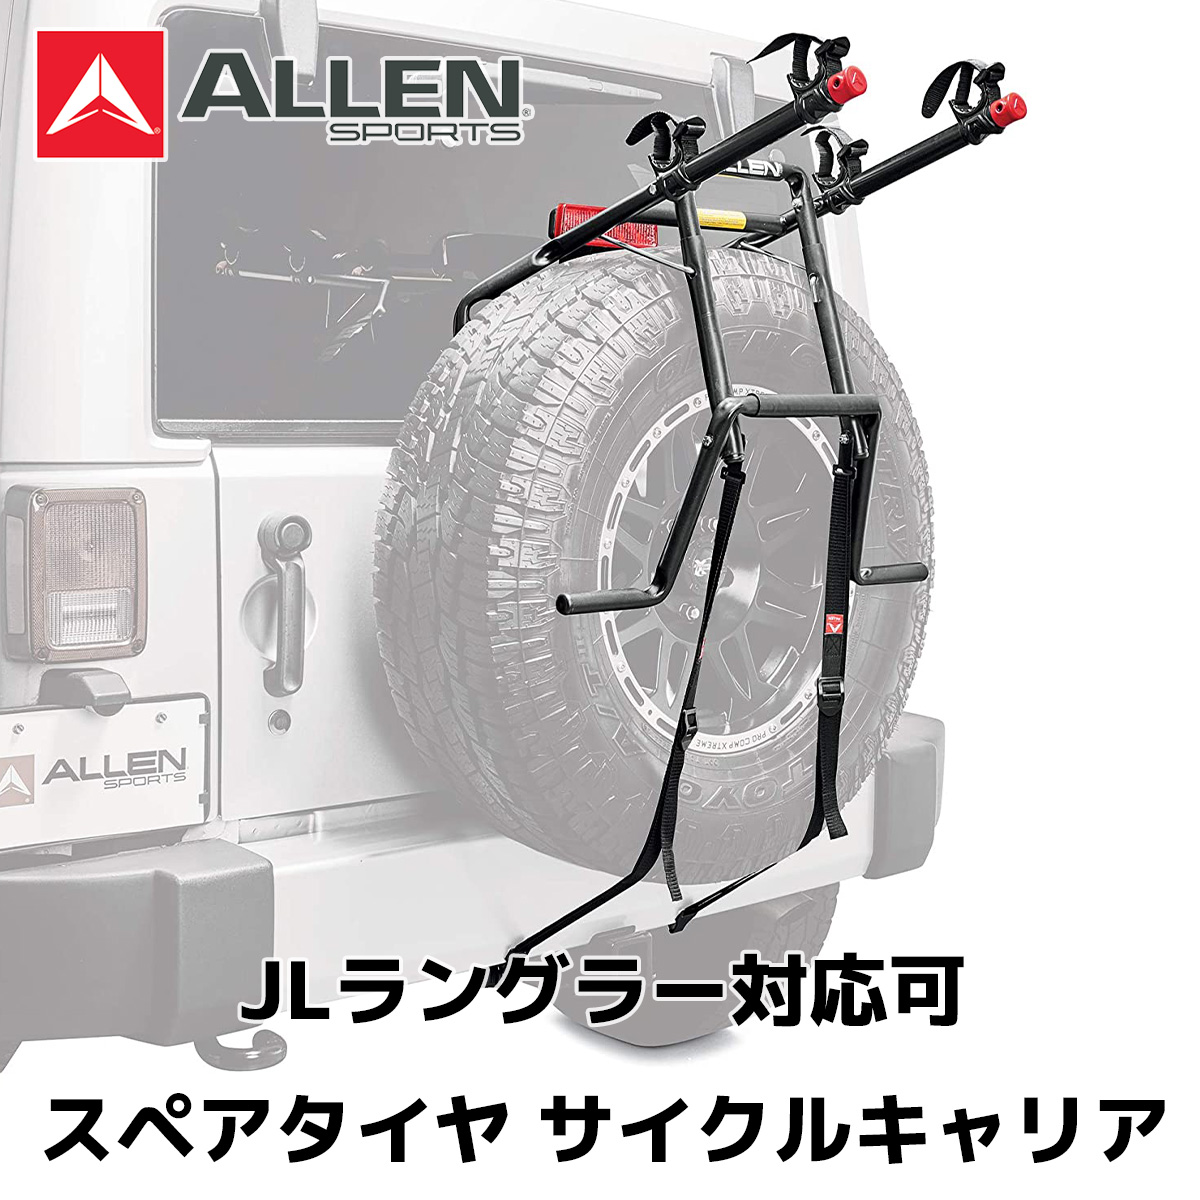 AllenSports アレンスポーツ スペアタイヤ ストア サイクルキャリア DN-322 ジープ ジムニー 春の新作続々 ラングラー